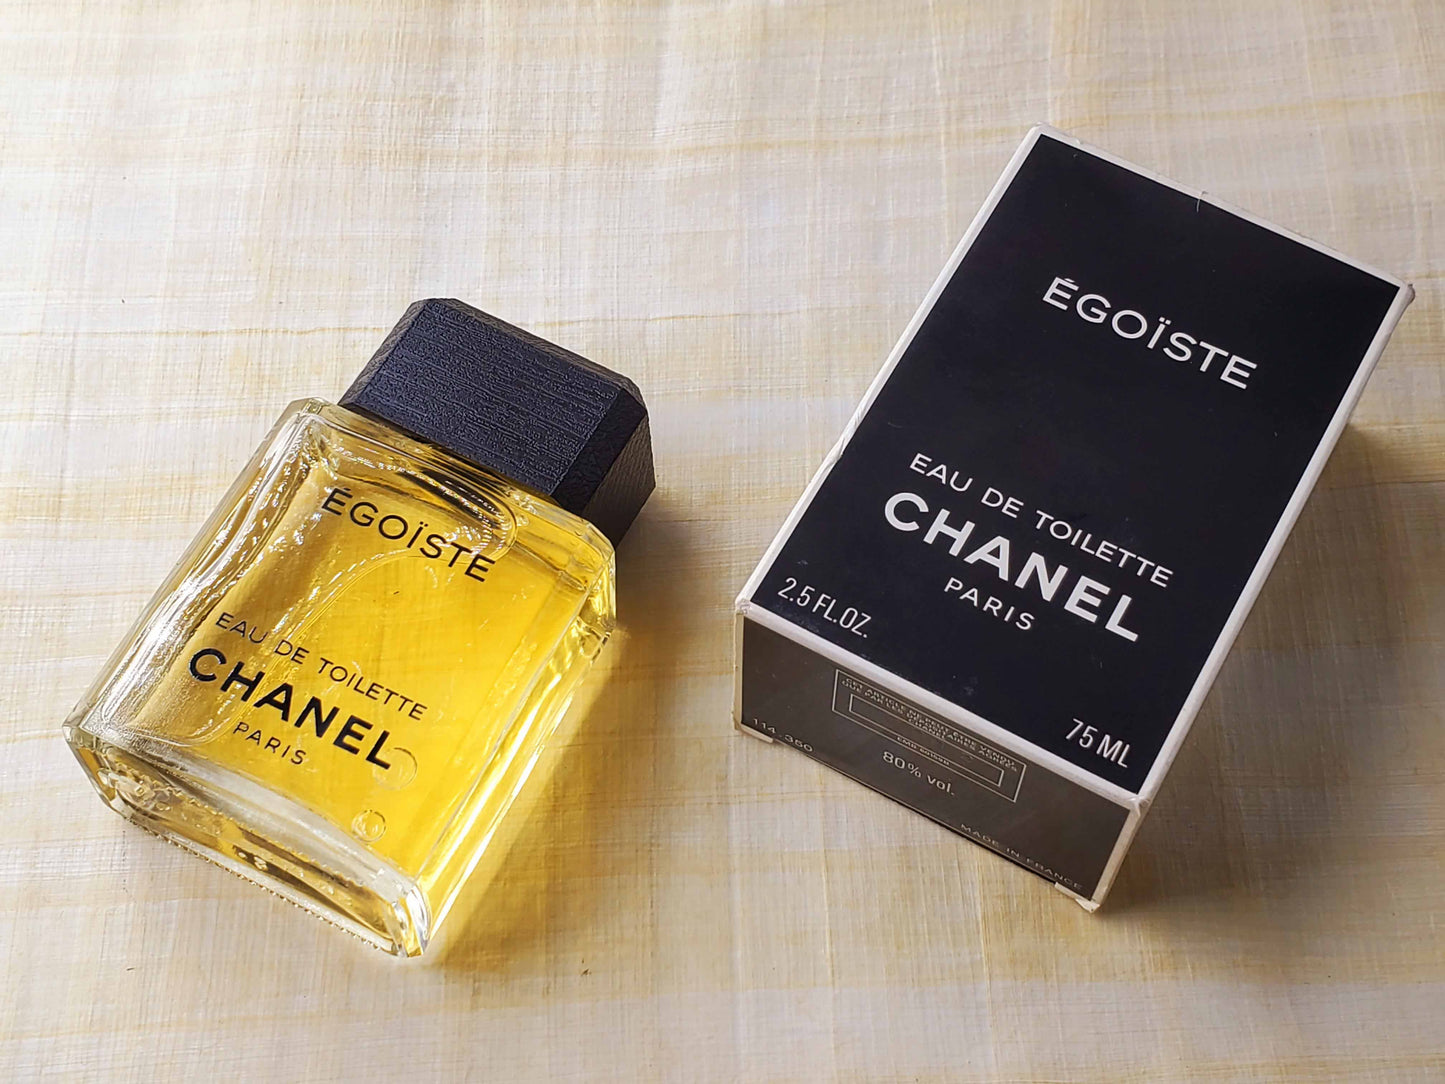 Egoiste Chanel for Men EDT Spray 75 ml 2.5 oz OR 50 ml 1.7 oz, Vintage 1995, Rare, Same Pics